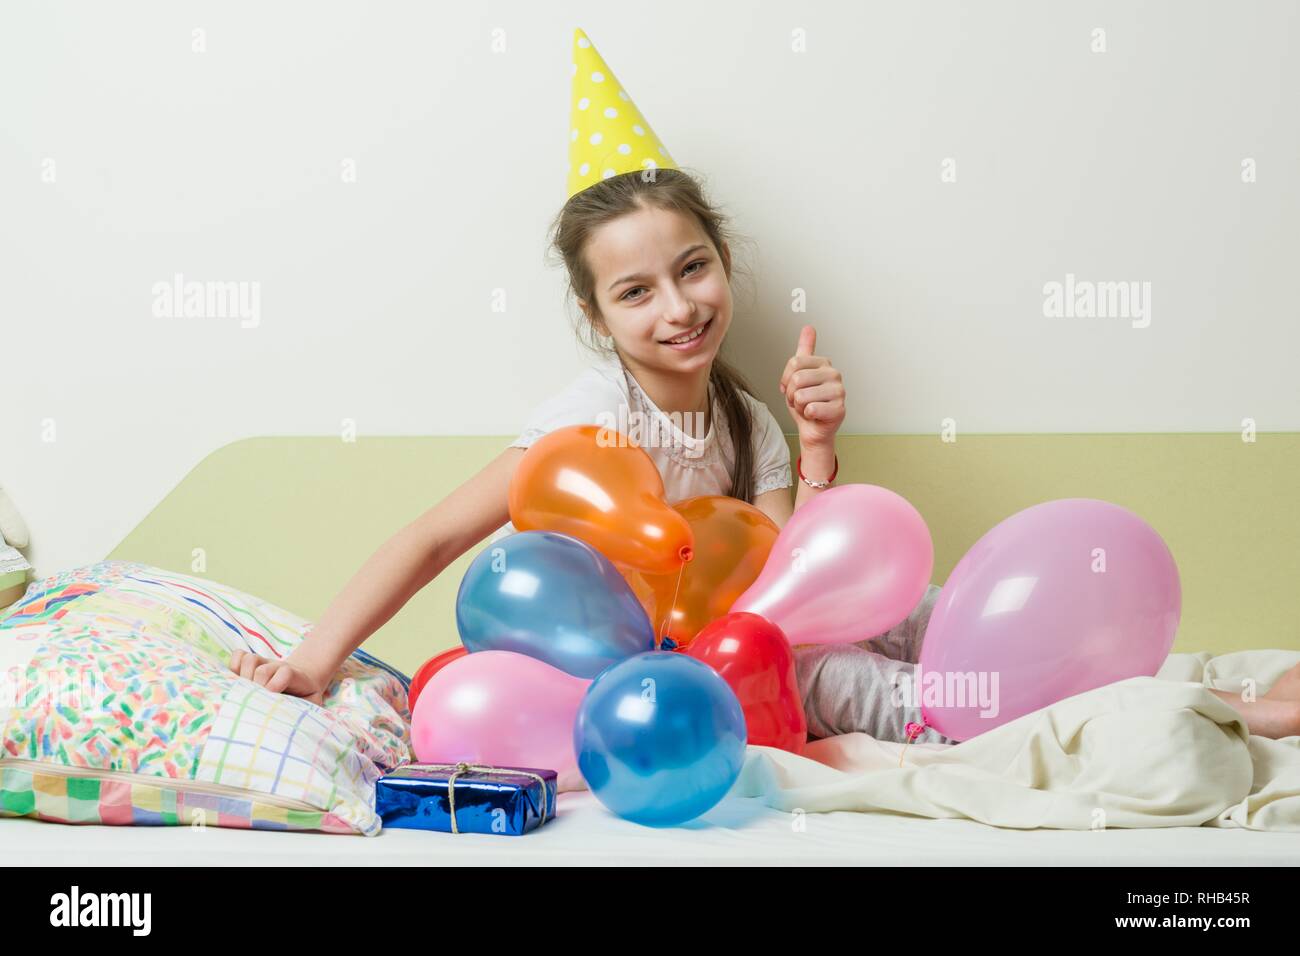 11 Years Of Great: Regalo De Cumpleaños Para Una Niña De 11